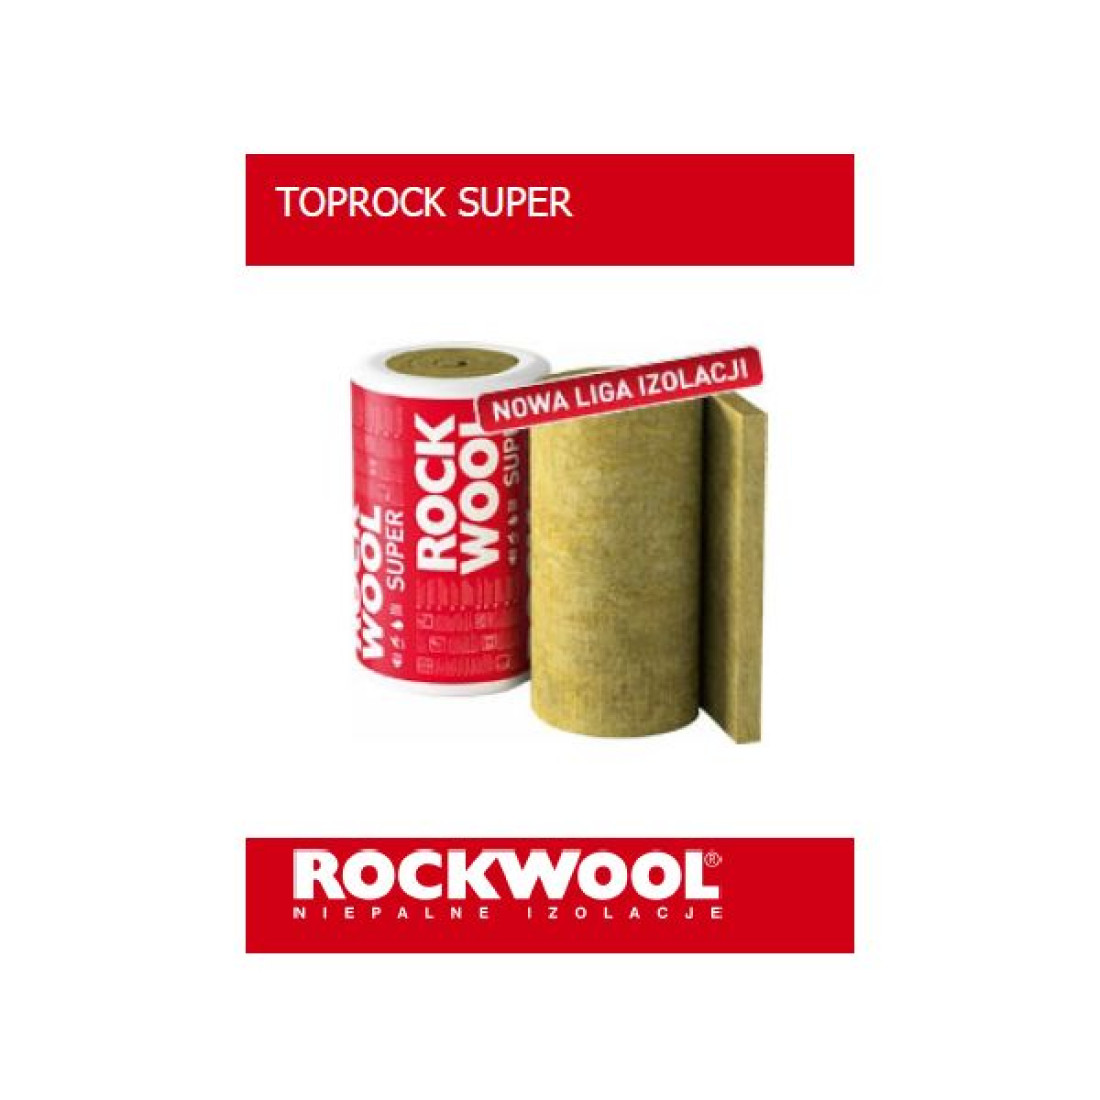 ROCKWOOL TOPROCK SUPER - ocieplony dach nad głową